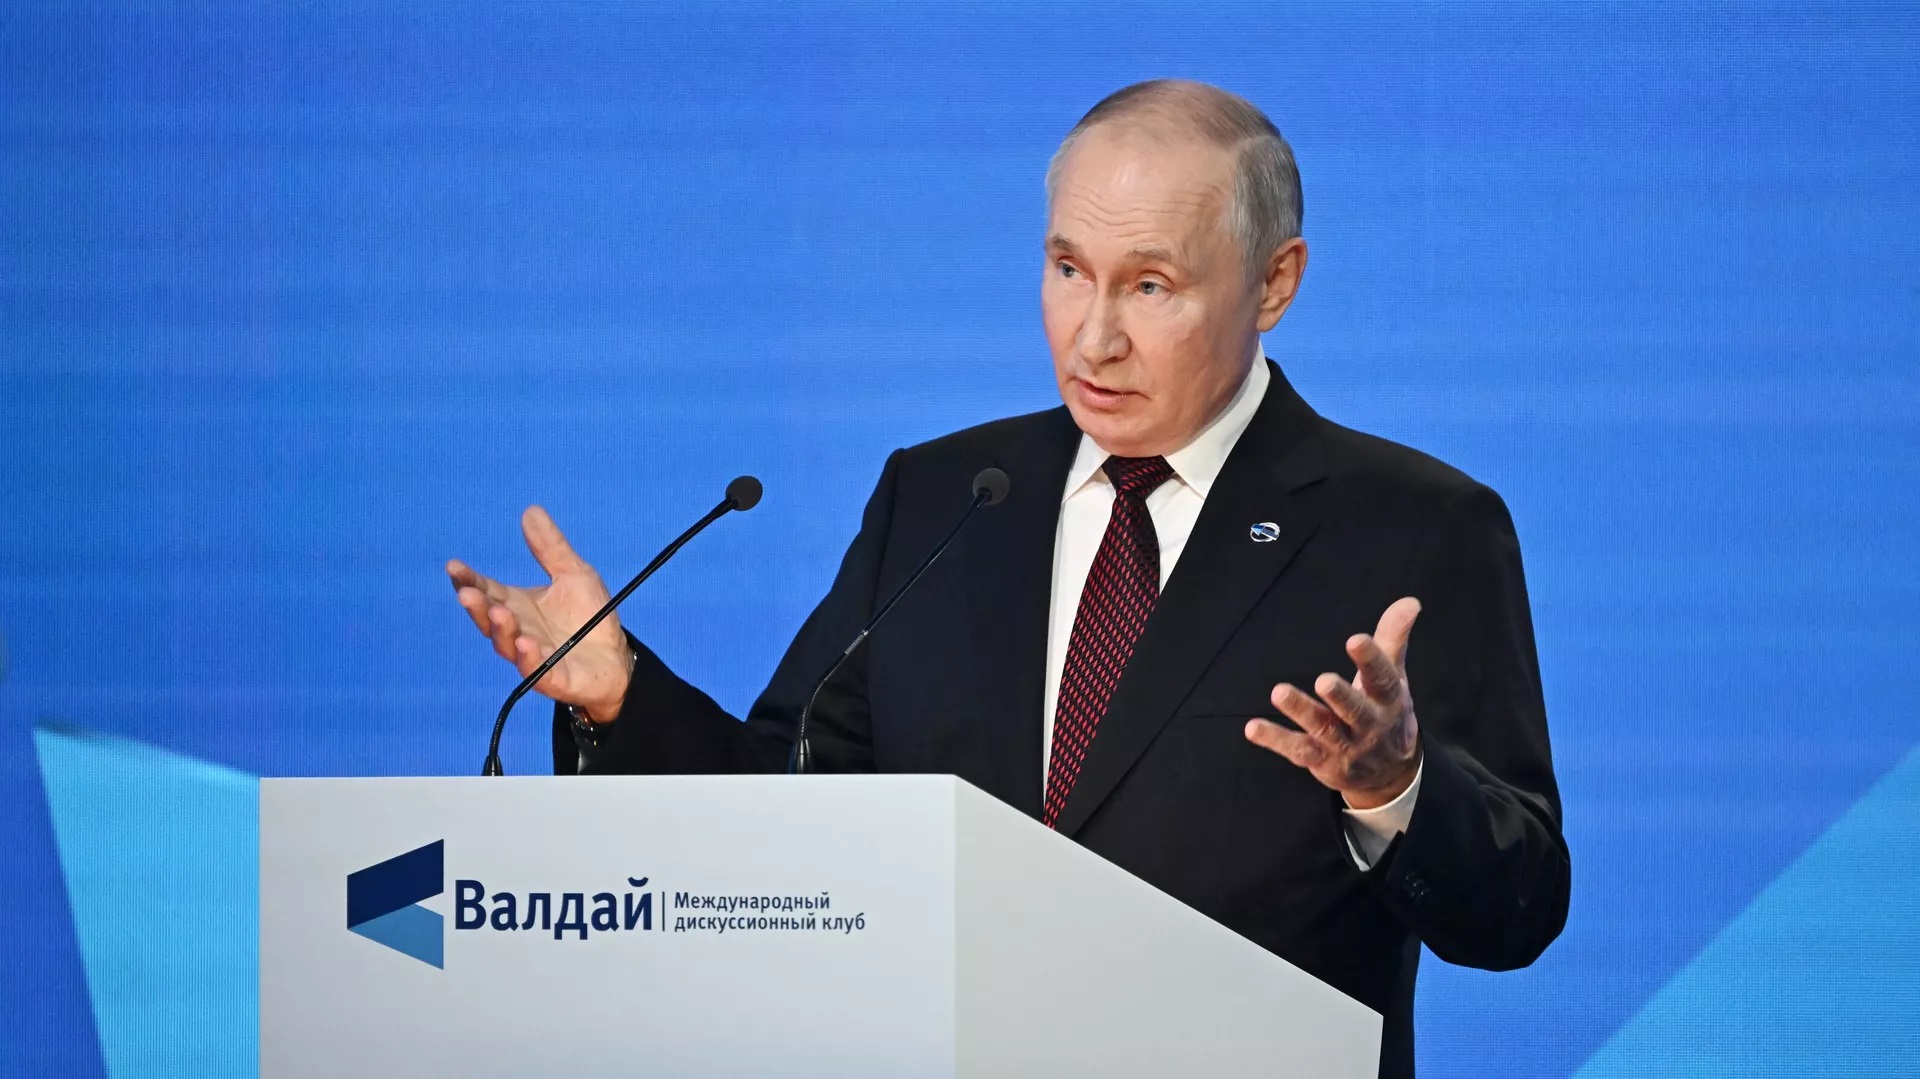 Un problème cerné par Poutine vient “des élites corrompues” de l’Occident, note un professeur